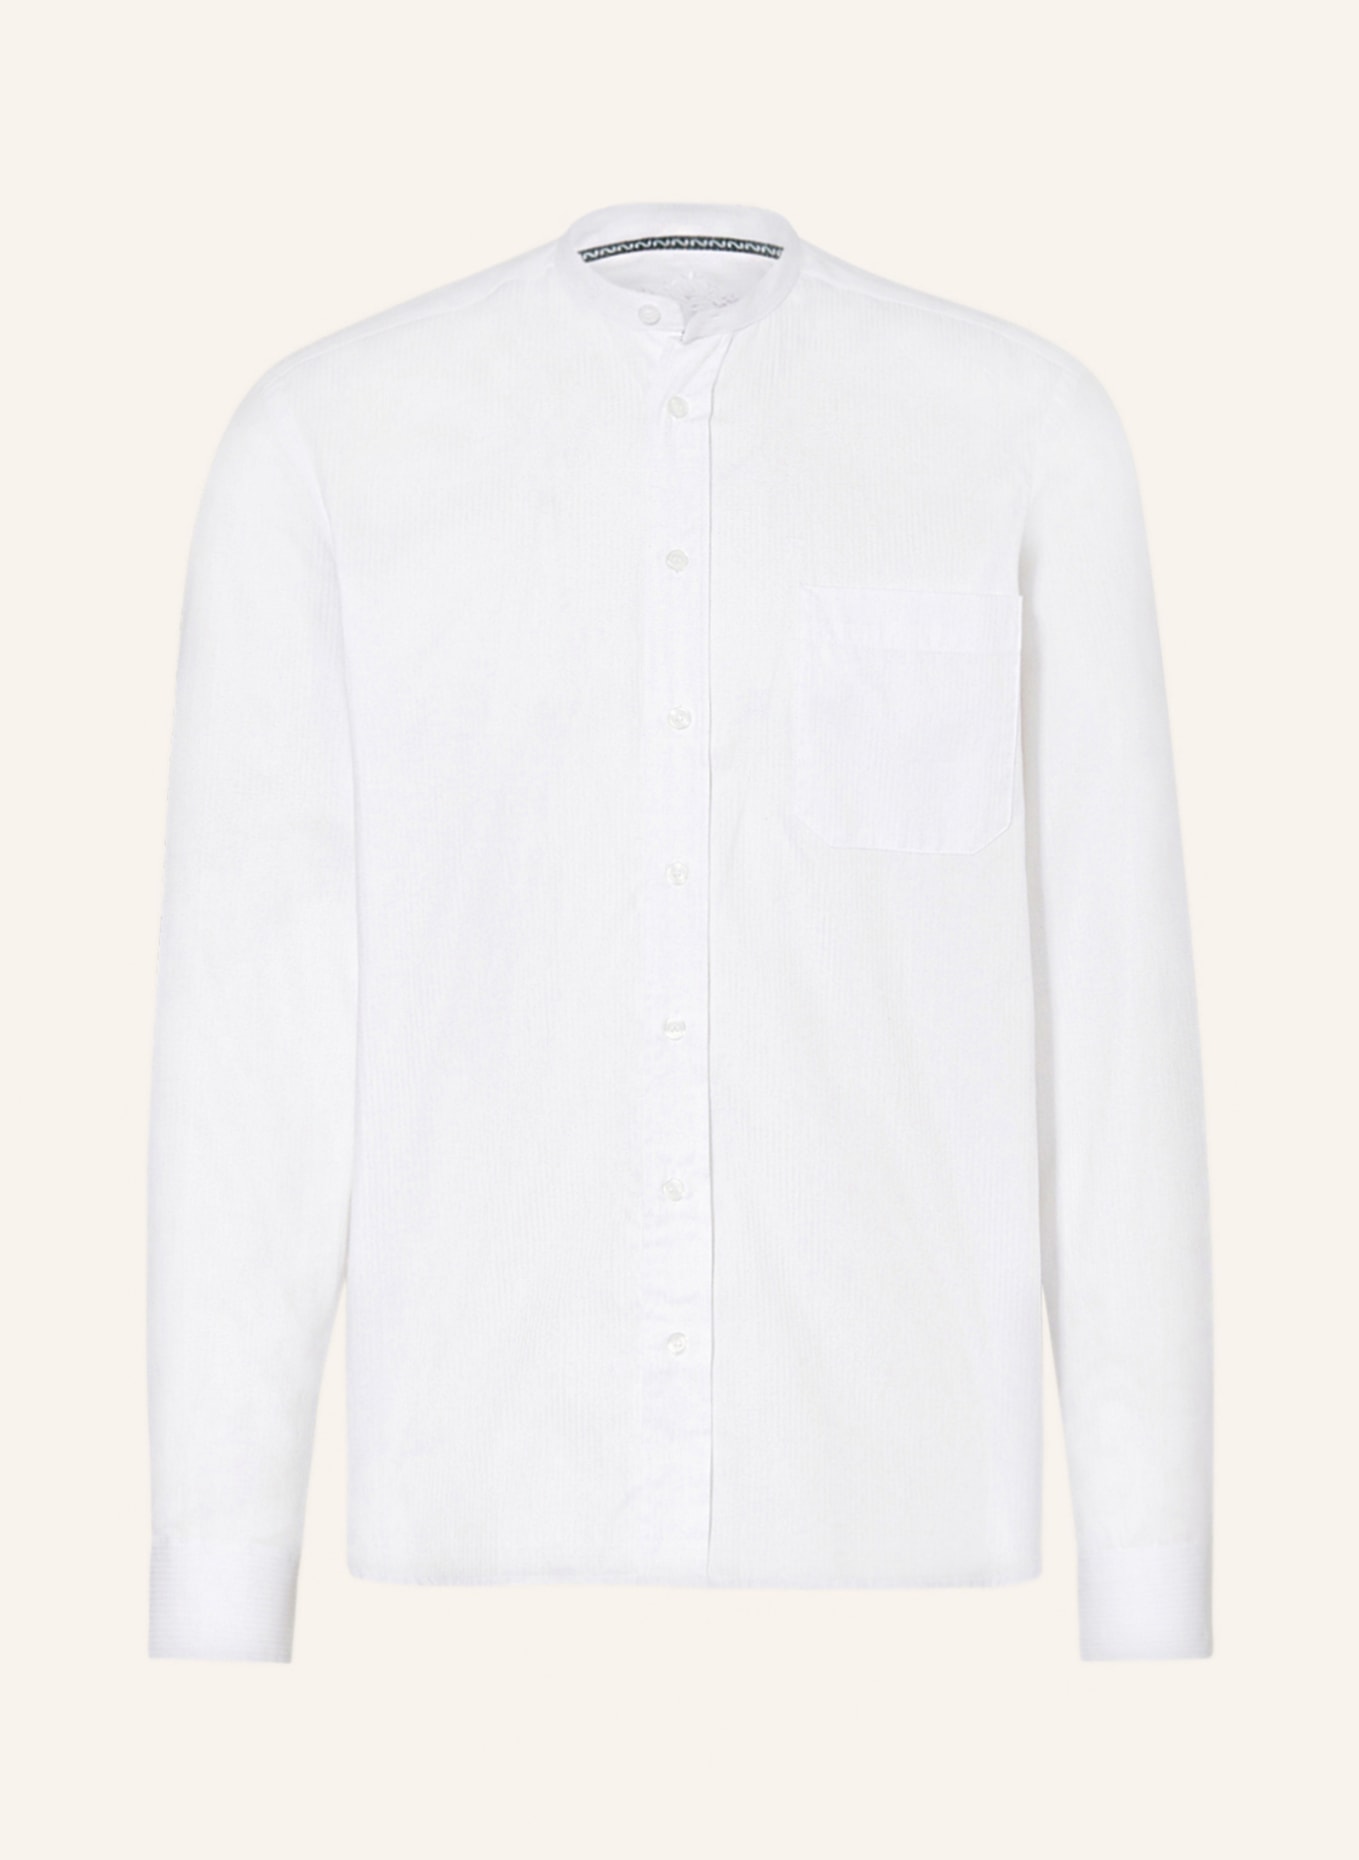 Hammerschmid Trachten shirt regular fit, Color: WHITE (Image 1)